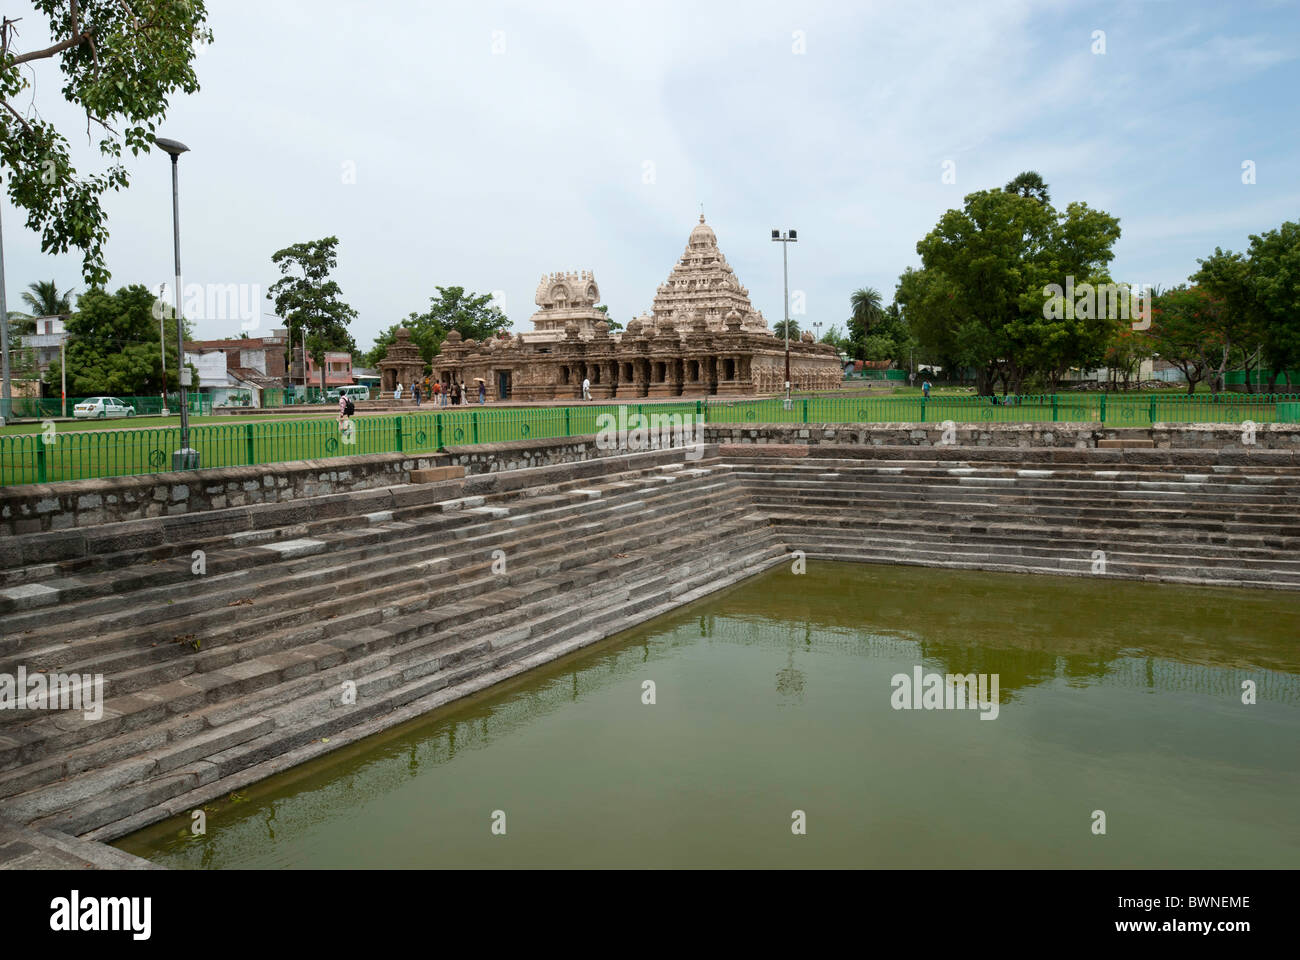 Le temple Kailasanatha avec réservoir en;Kanchipuram kancheepuram, Tamil Nadu, Inde. Banque D'Images